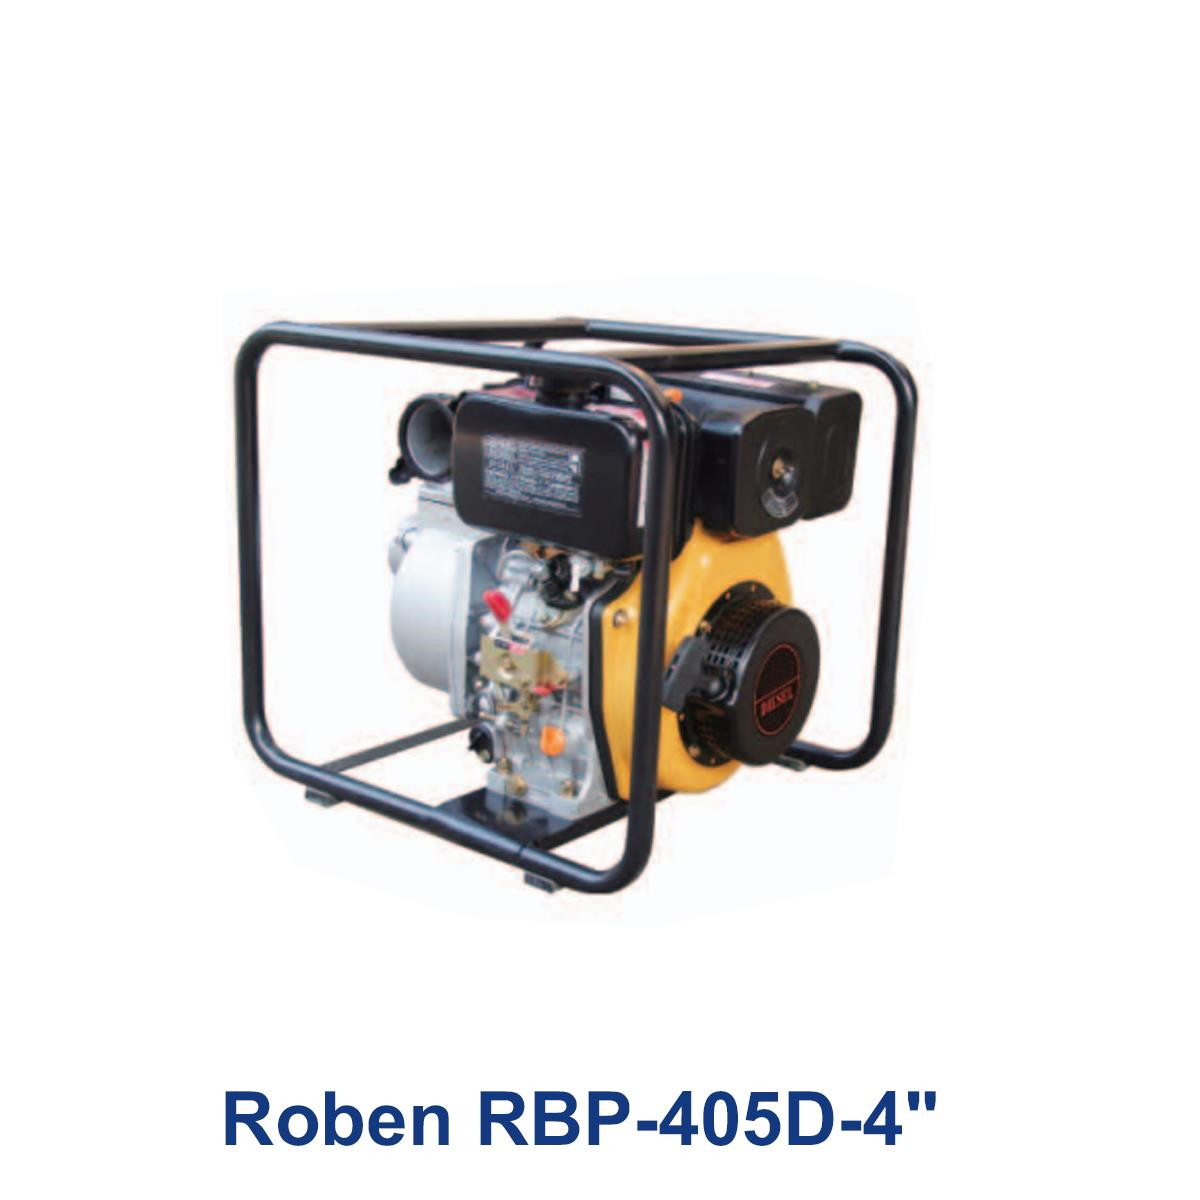 Roben-RBP-405D-4